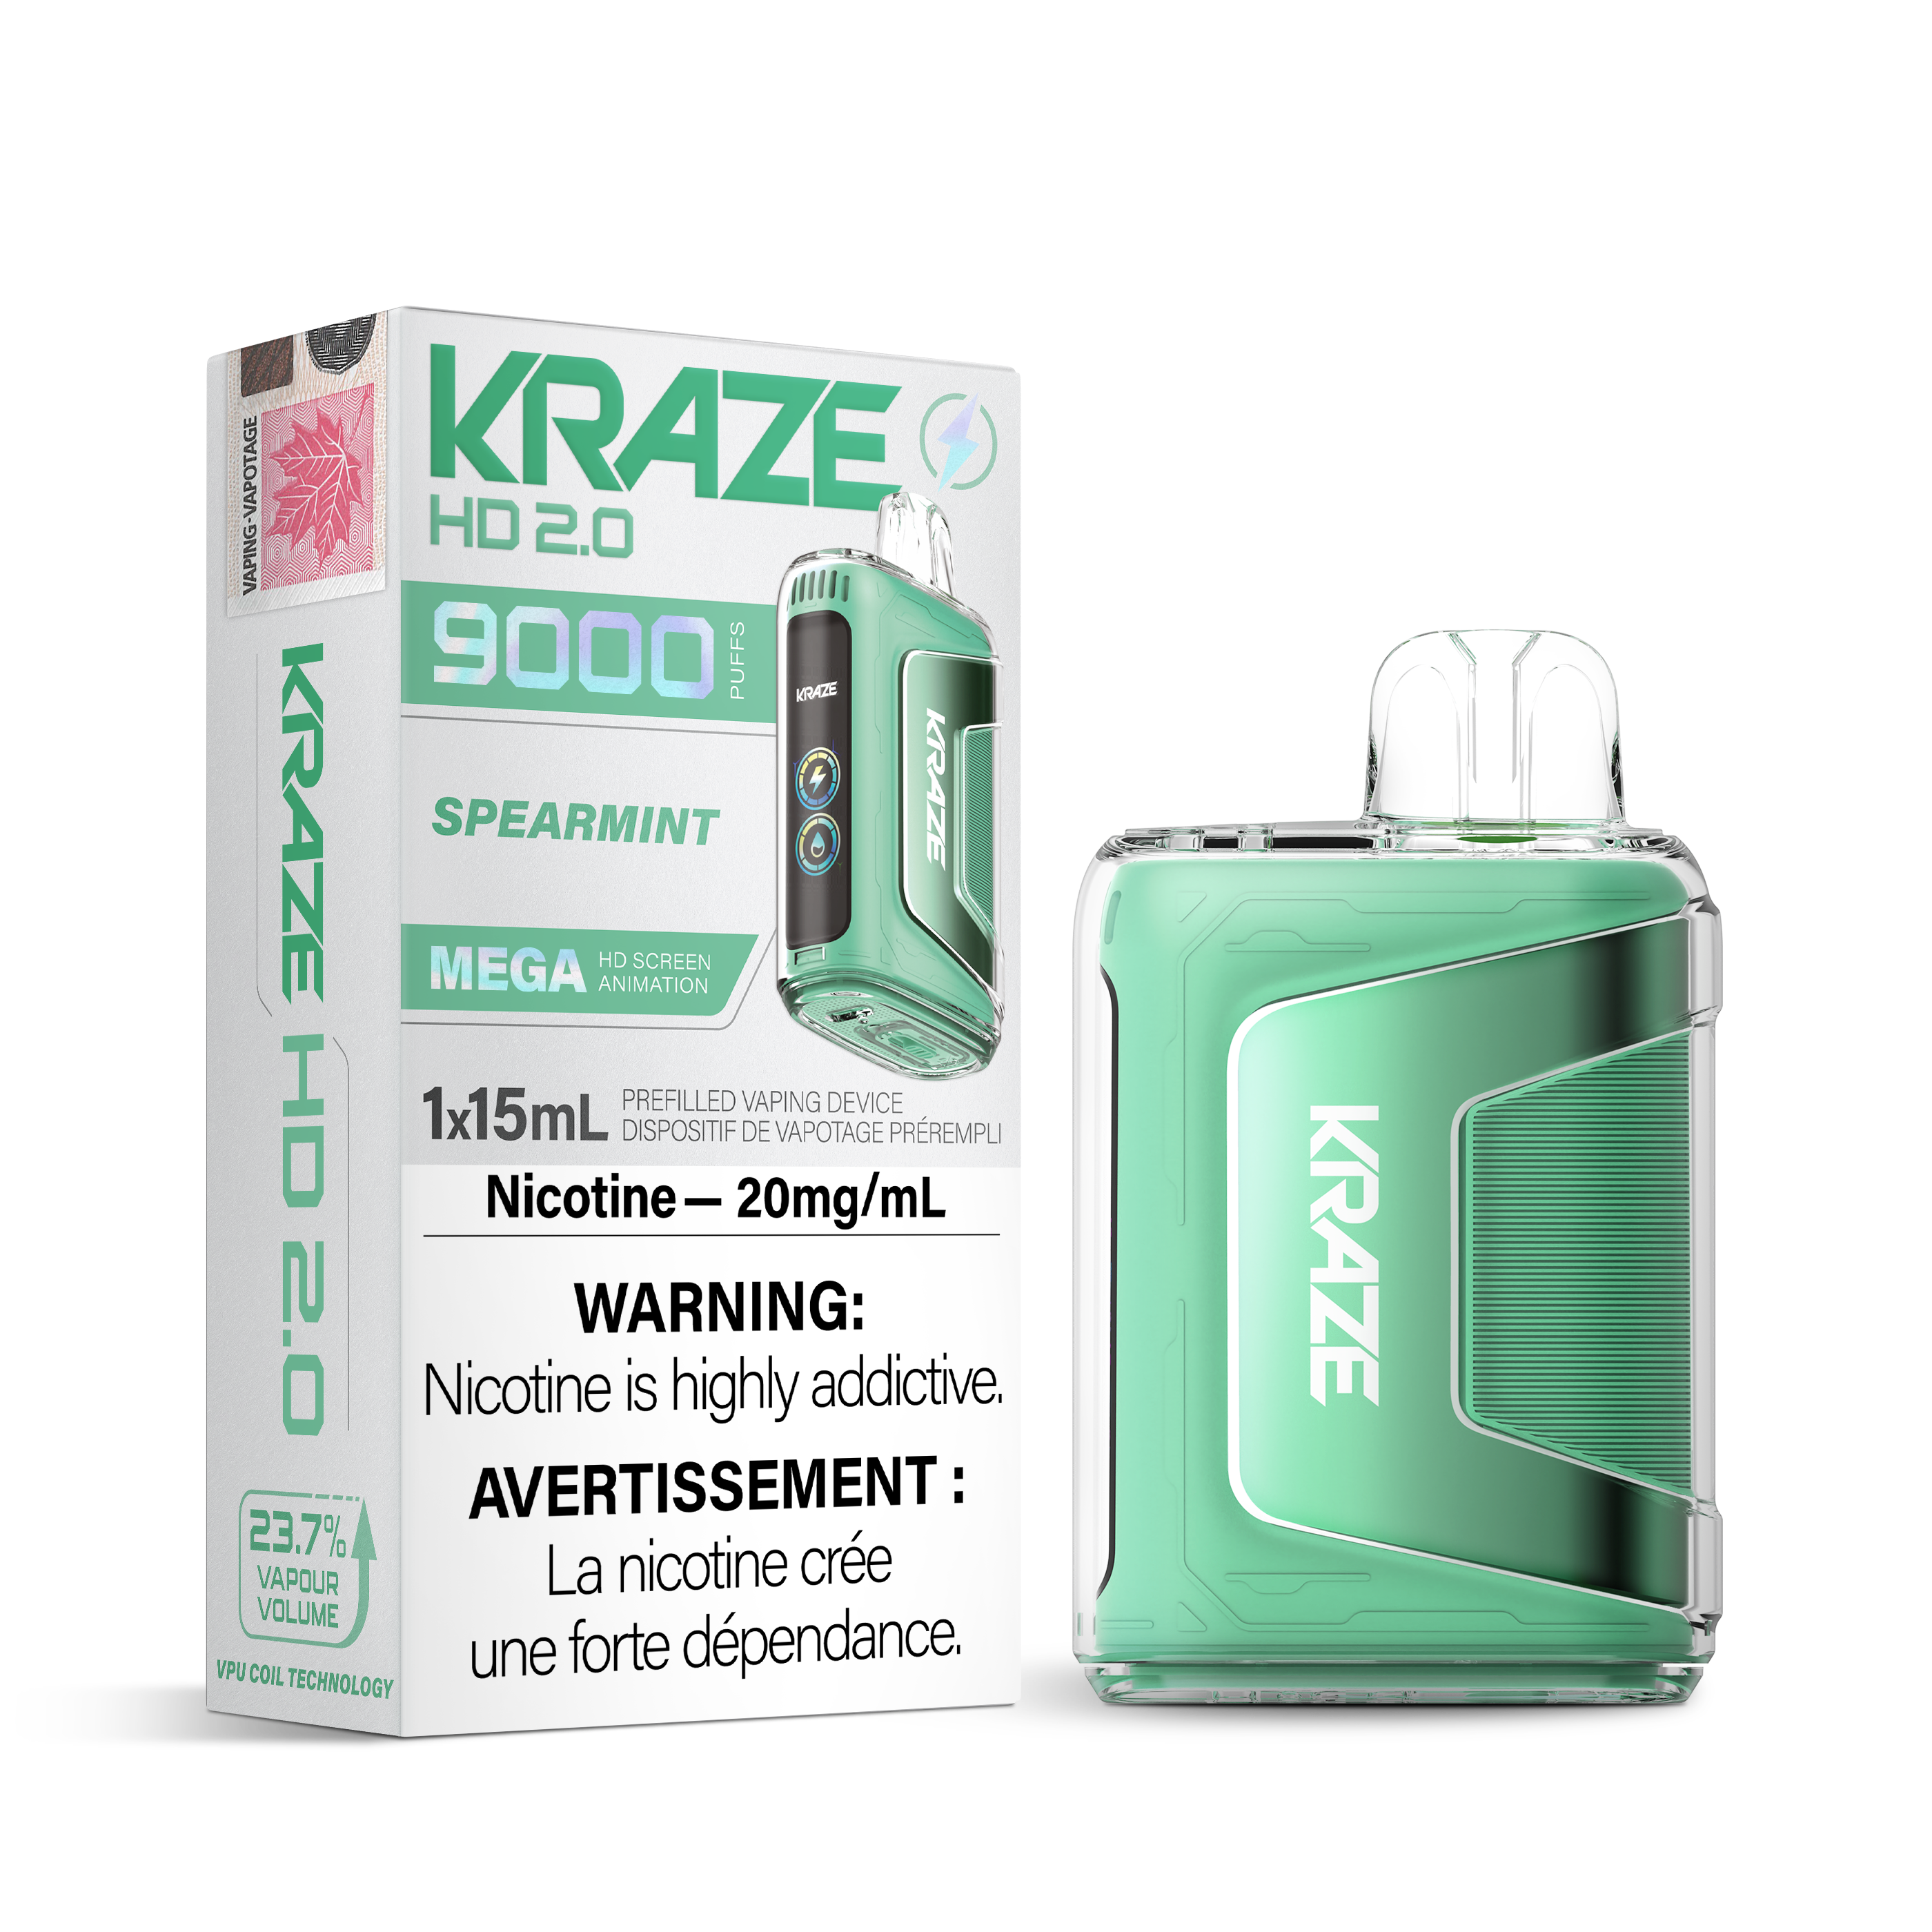 KRAZE HD 2.0 9000 SPEARMINT 20MG